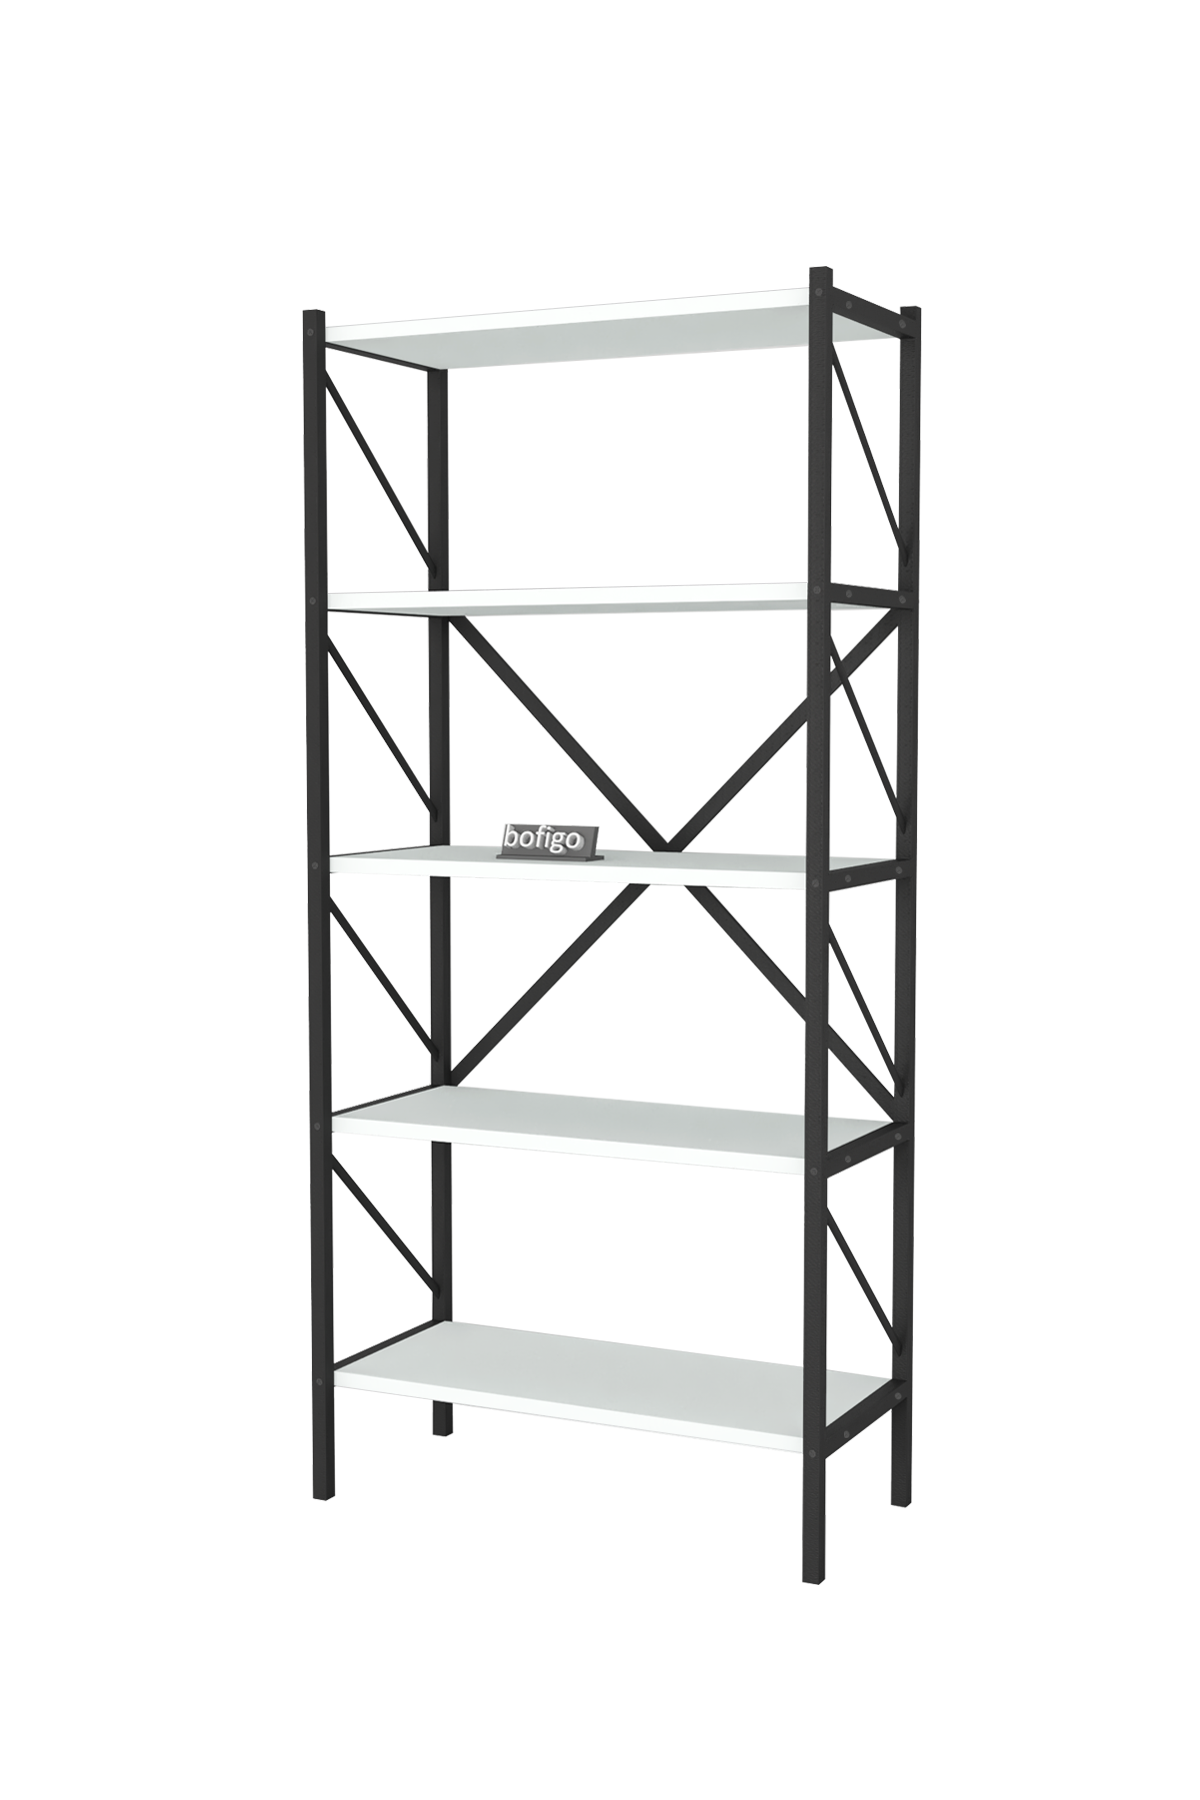 Bofigo Decorative 5 Shelf Bookcase Metal Bookcase White